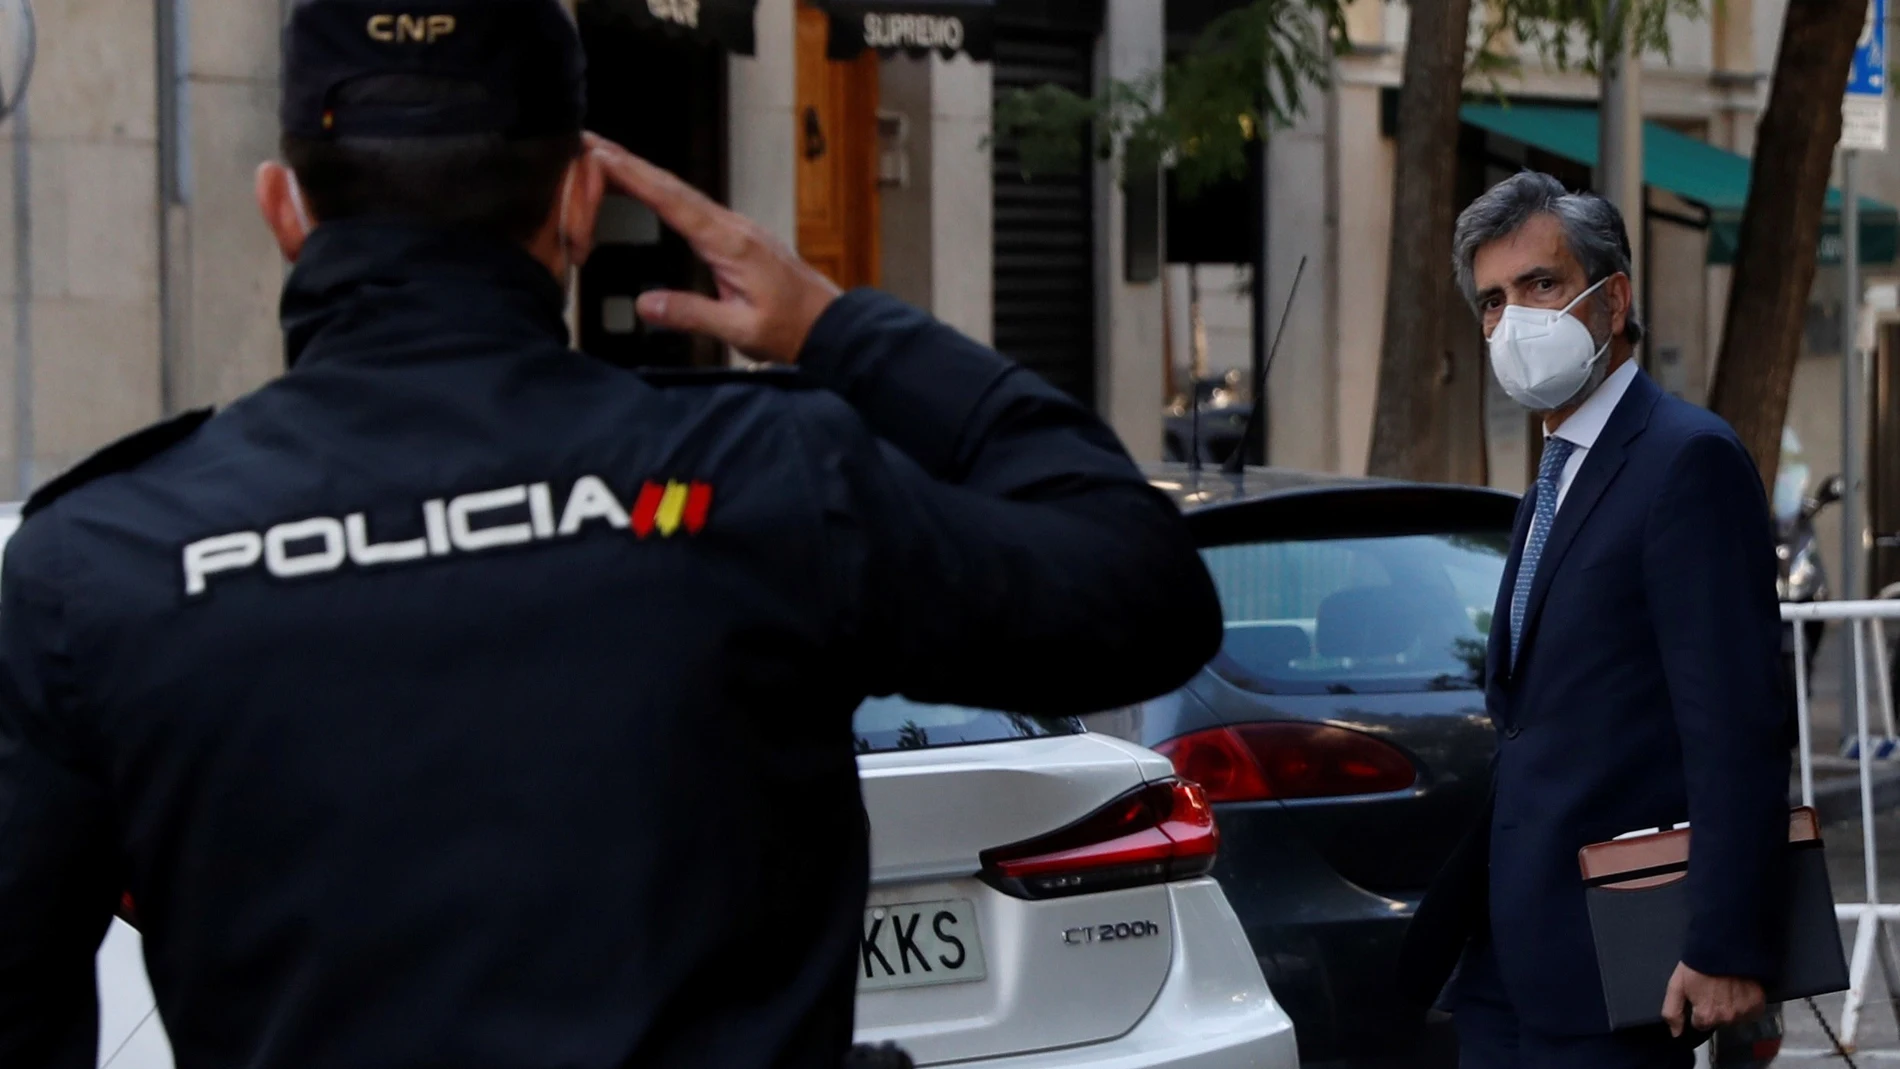 El presidente del Consejo General del Poder Judicial (CGPJ), Carlos Lesmes, a su llegada este miércoles a la sede del CGPJ, institución que afronta una decena de nombramientos, seis de ellos del Tribunal Supremo, en medio de la polémica sobre la ausencia del rey en Barcelona la semana pasada.